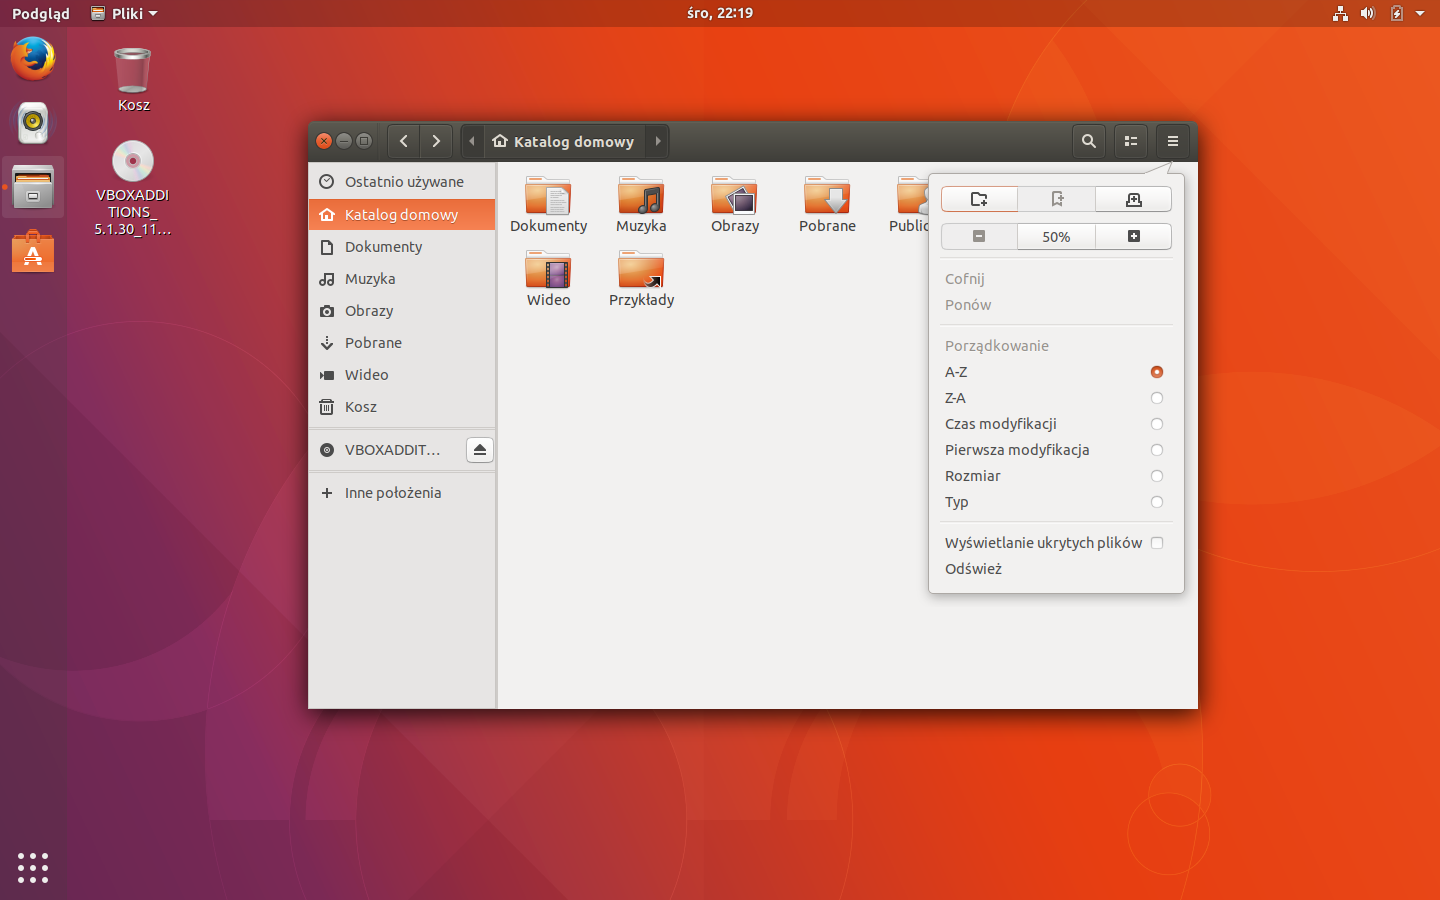 ubuntu 18.04 iso download 32-bit